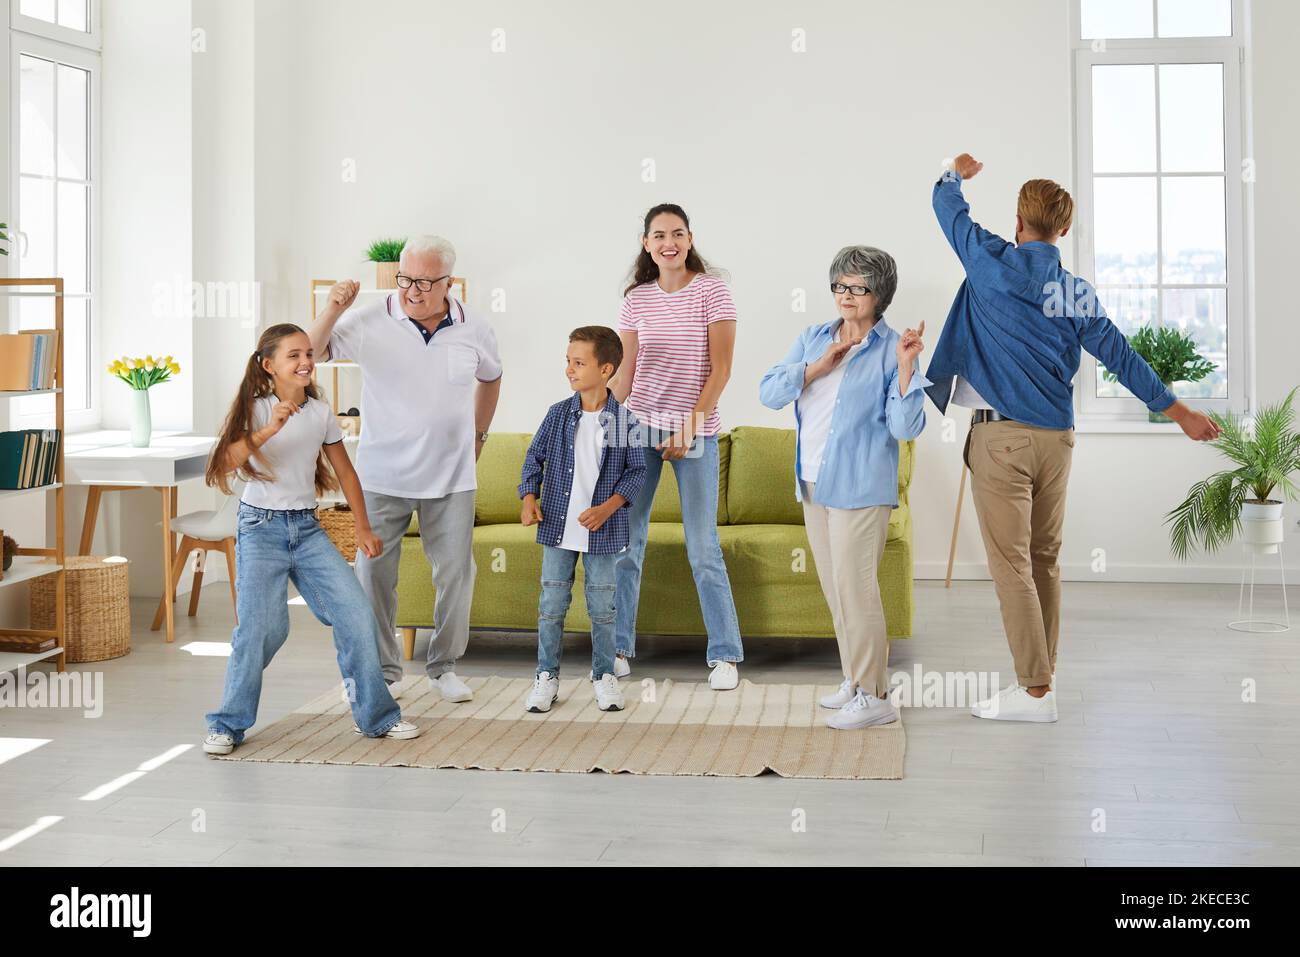 Fröhliche, fröhliche, lustige Familie, die im Wohnzimmer ihres Hauses oder ihrer Wohnung tanzt Stockfoto